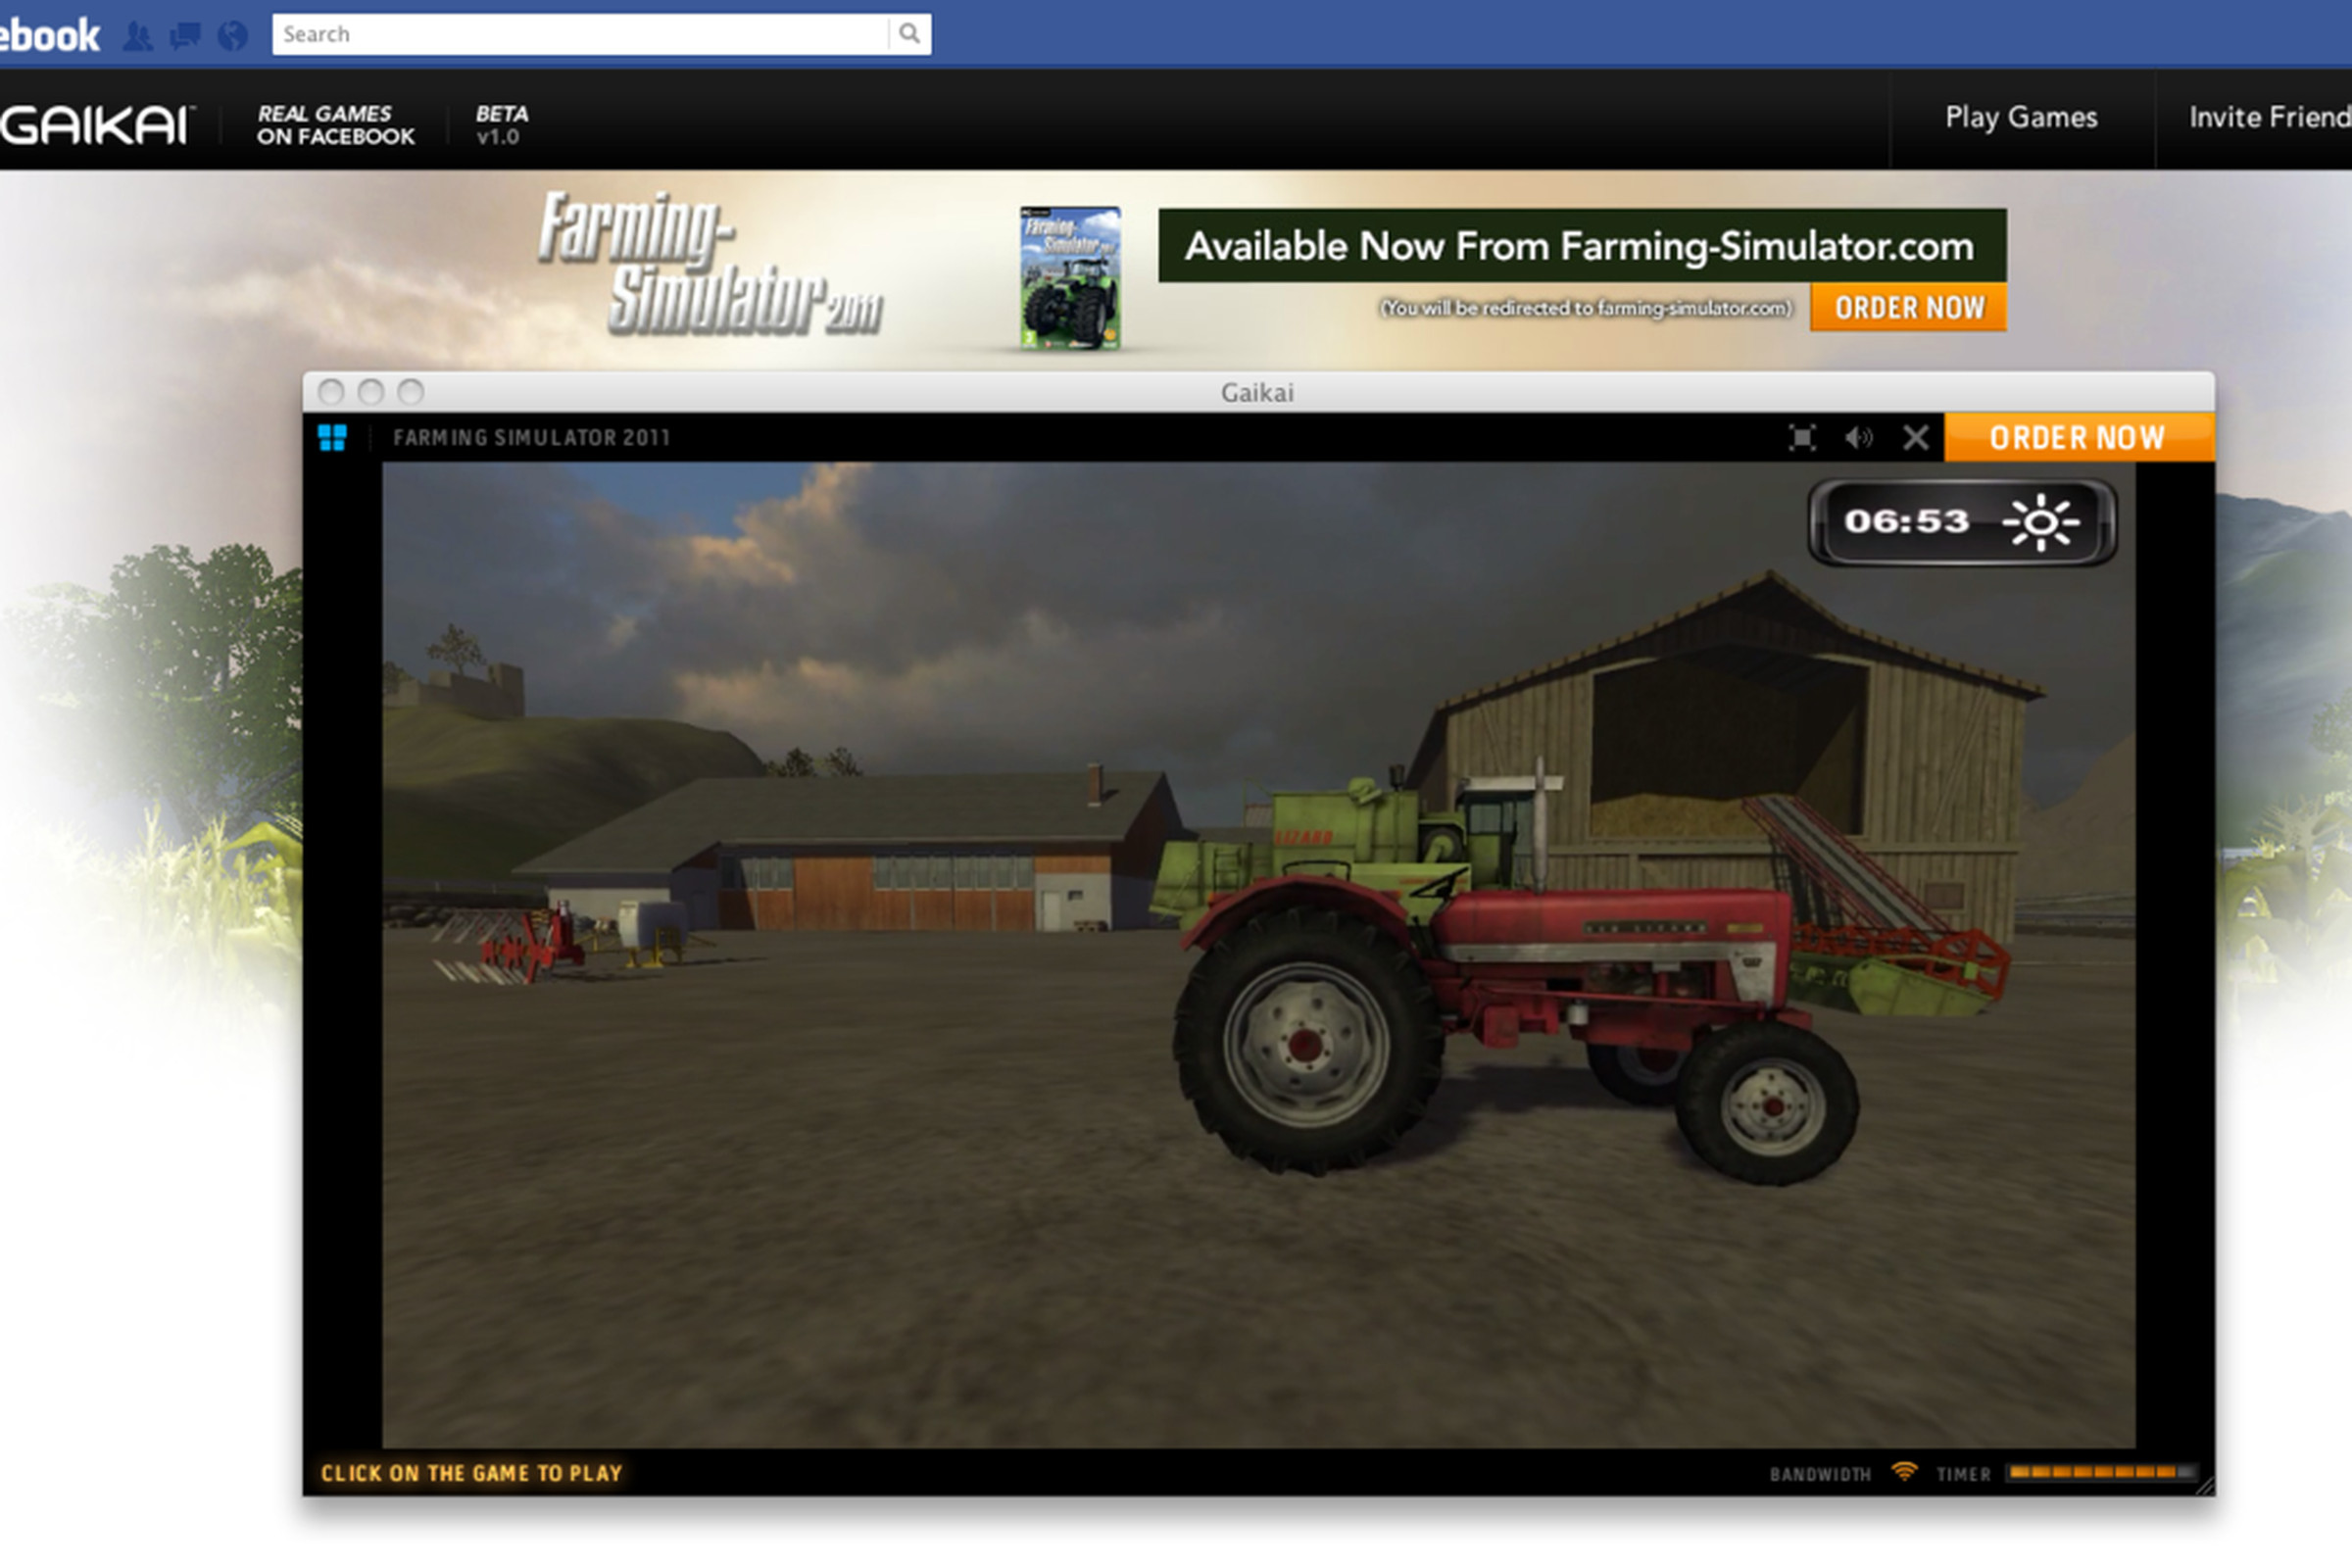 Gaikai Facebook Farming Simulator 2011